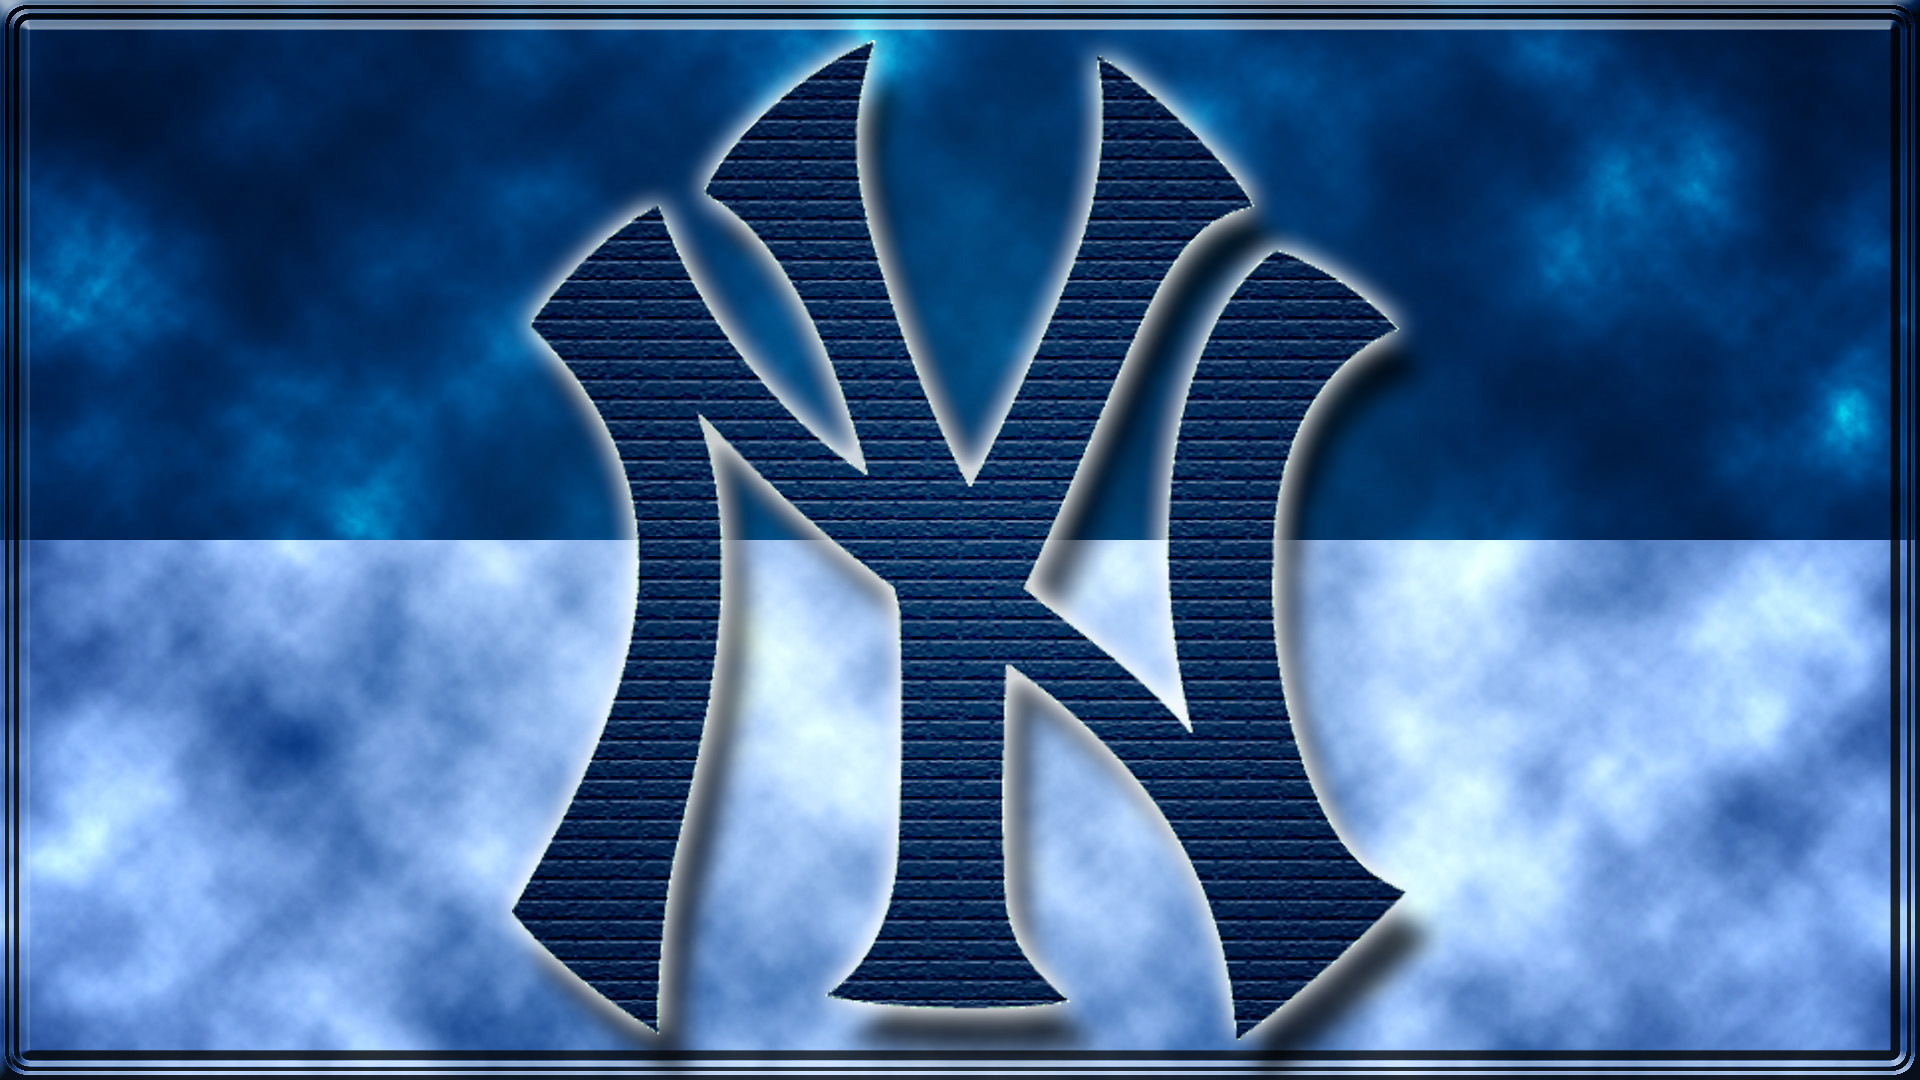 Ny Yankees Logo Wallpaper 60 images